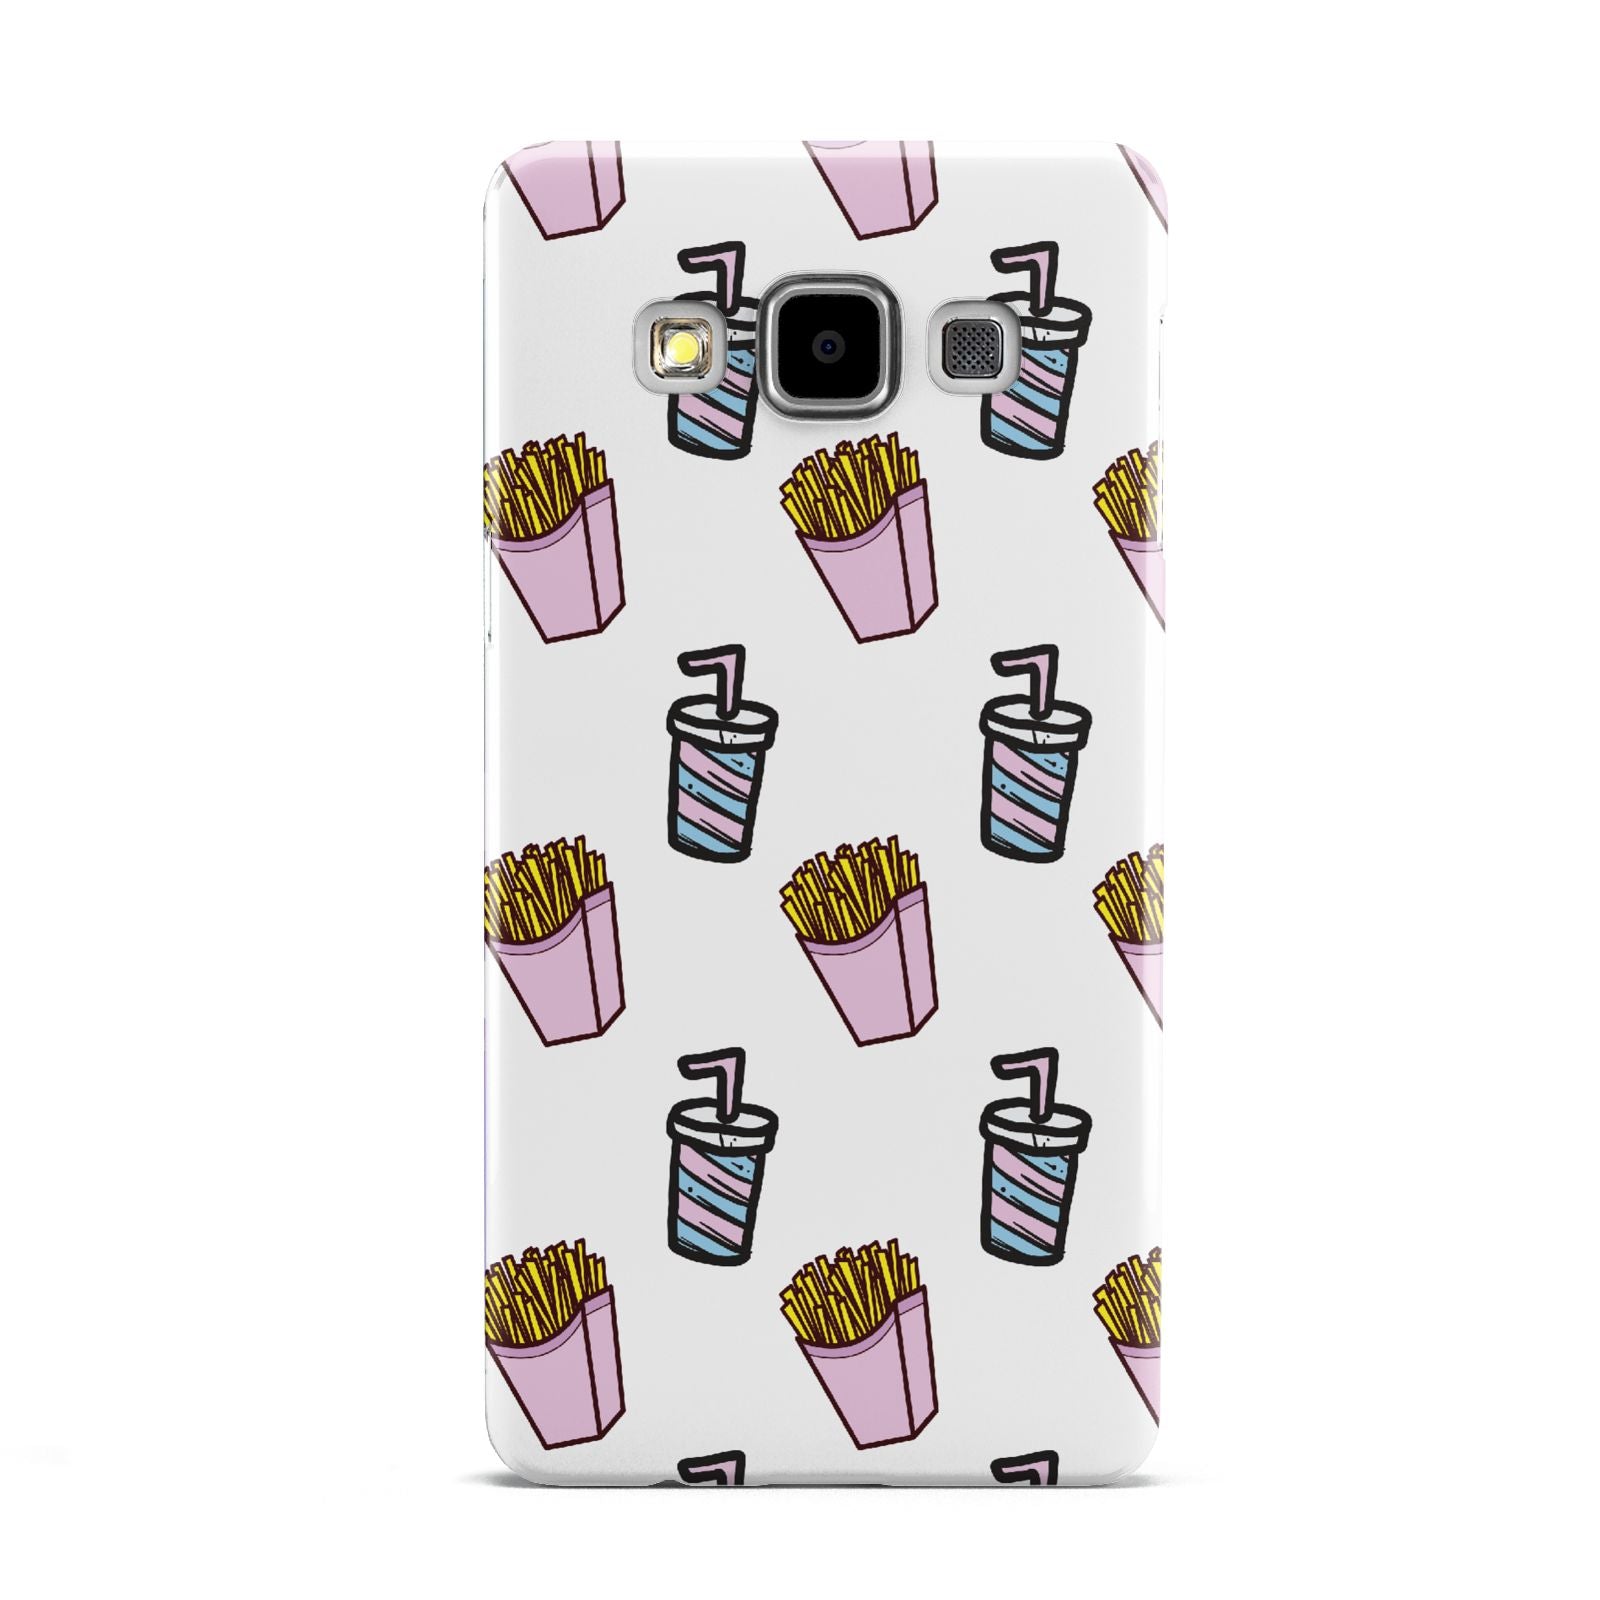 Fries Shake Fast Food Samsung Galaxy A5 Case